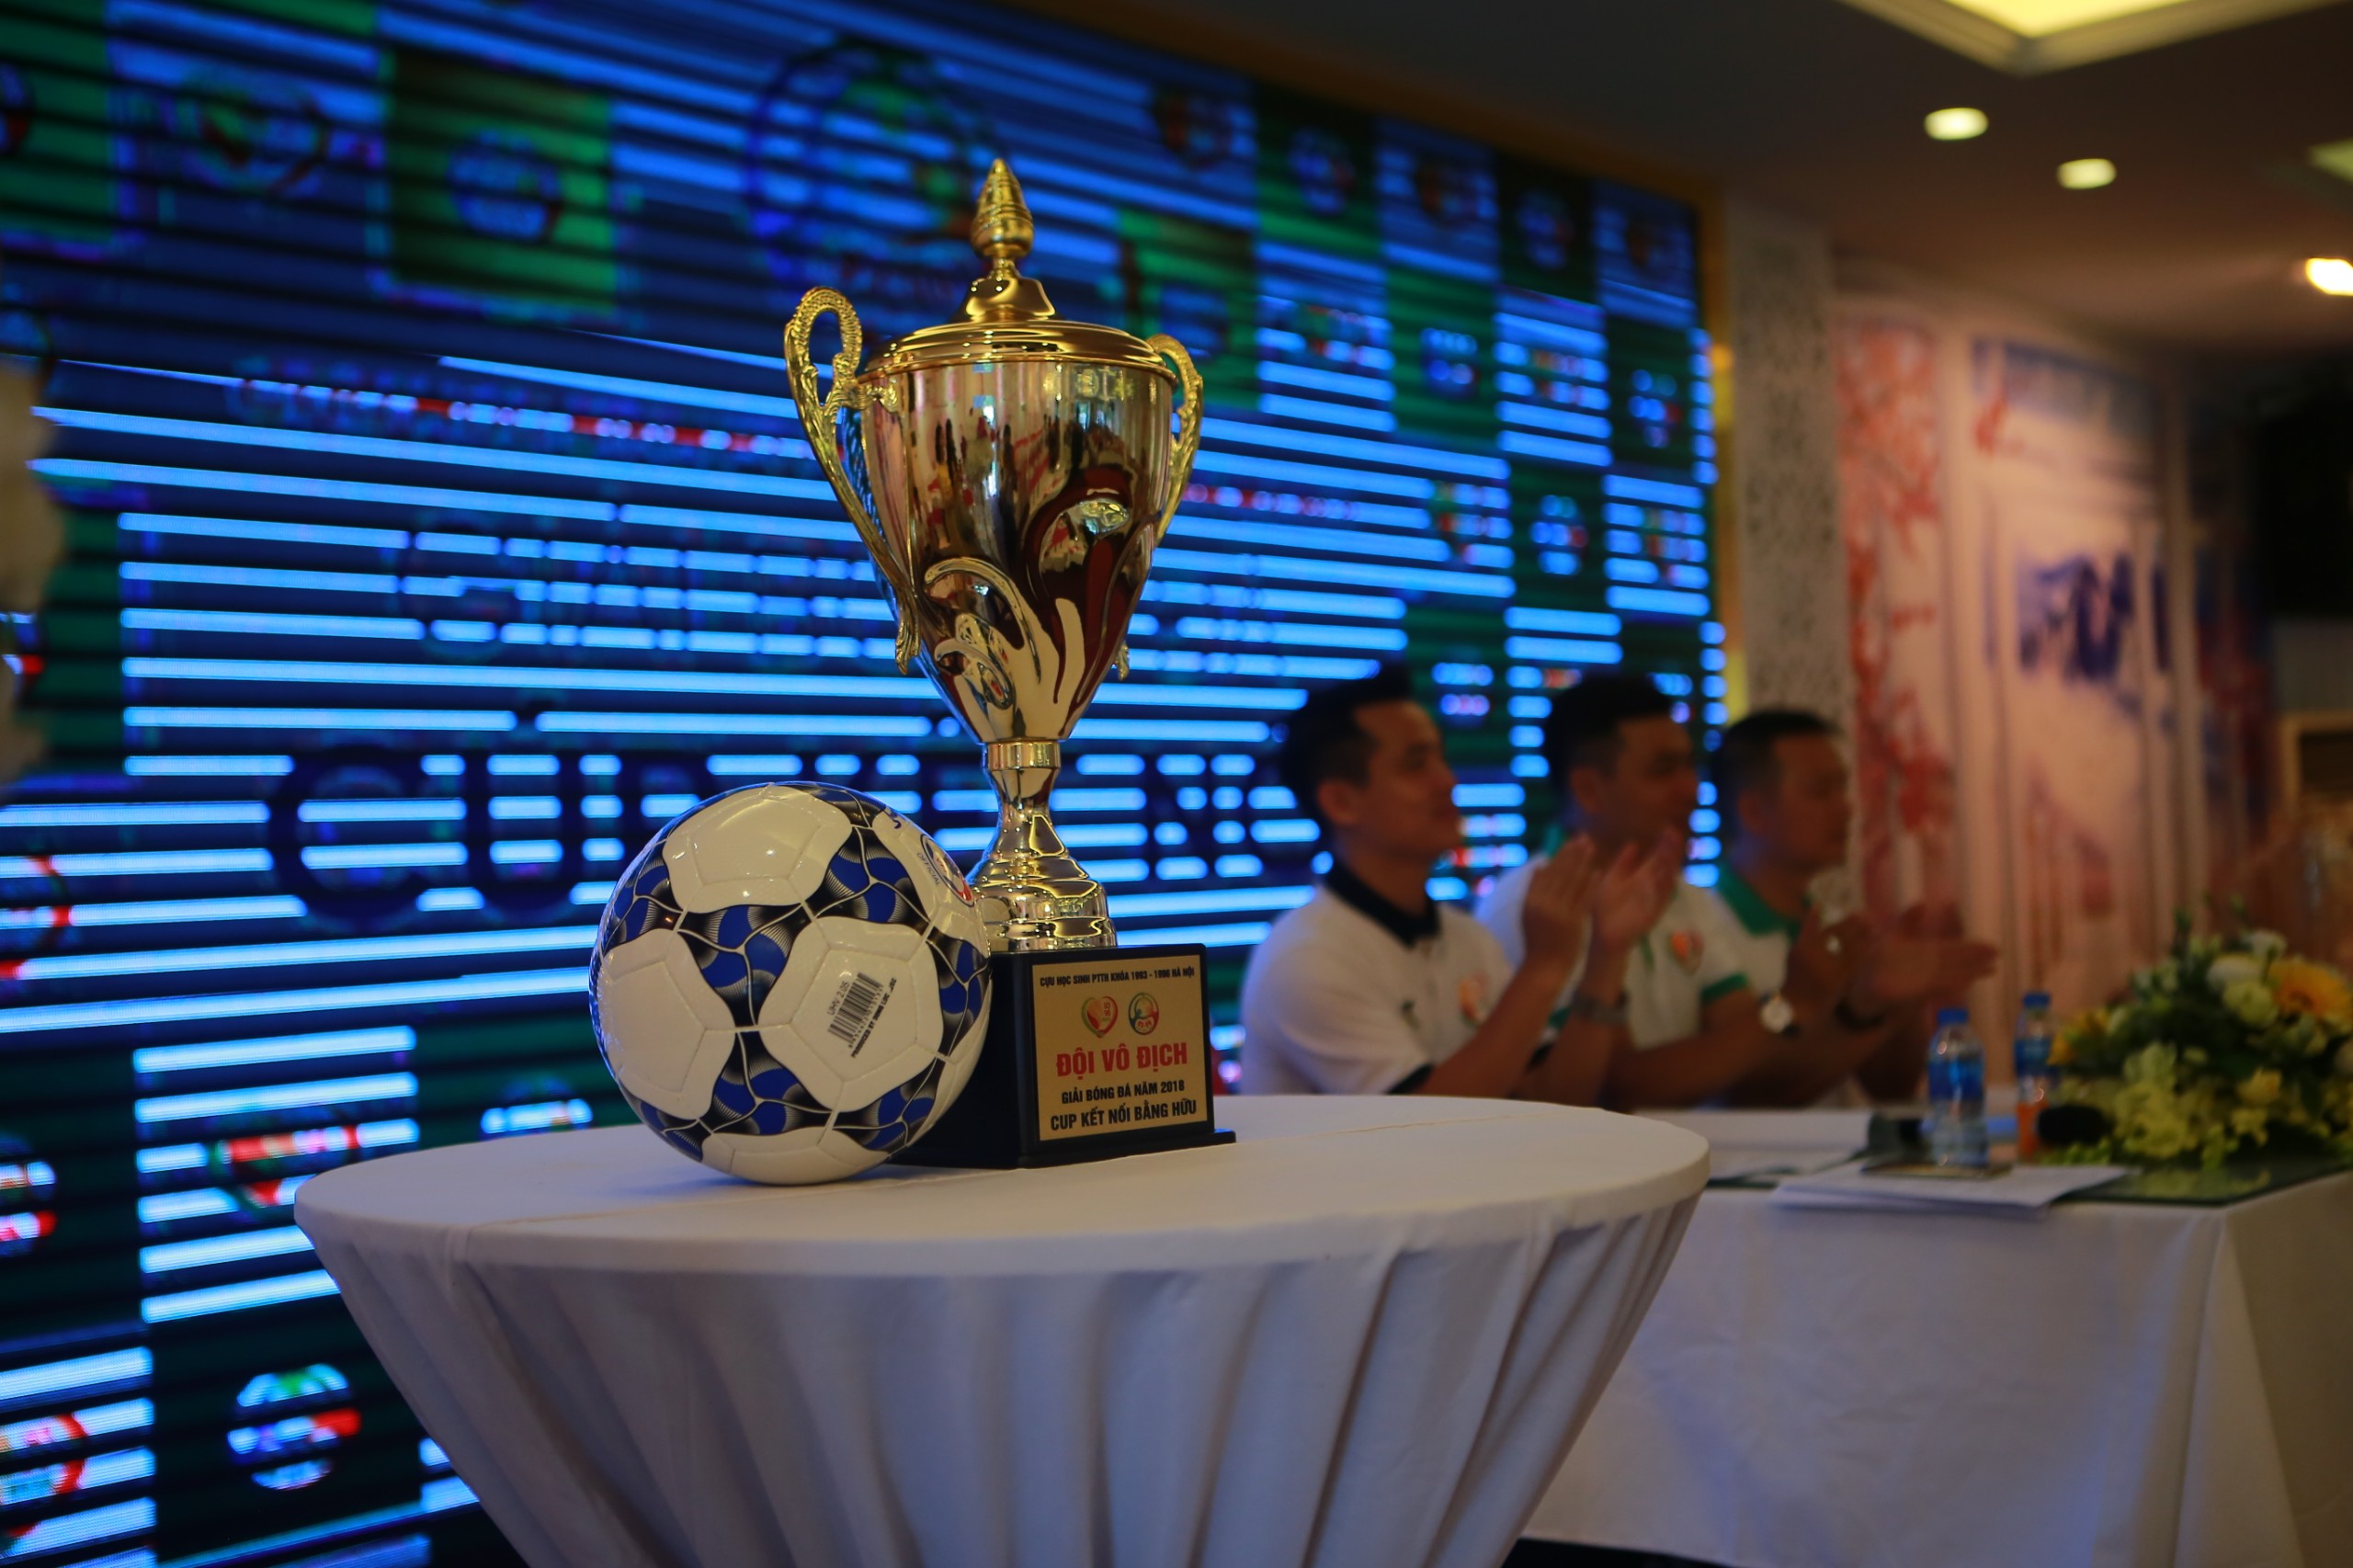 Giải Bóng đá Cúp Kết nối 2018 của cựu học sinh khóa 93-96 tại Hà Nội chuẩn bị khởi tranh